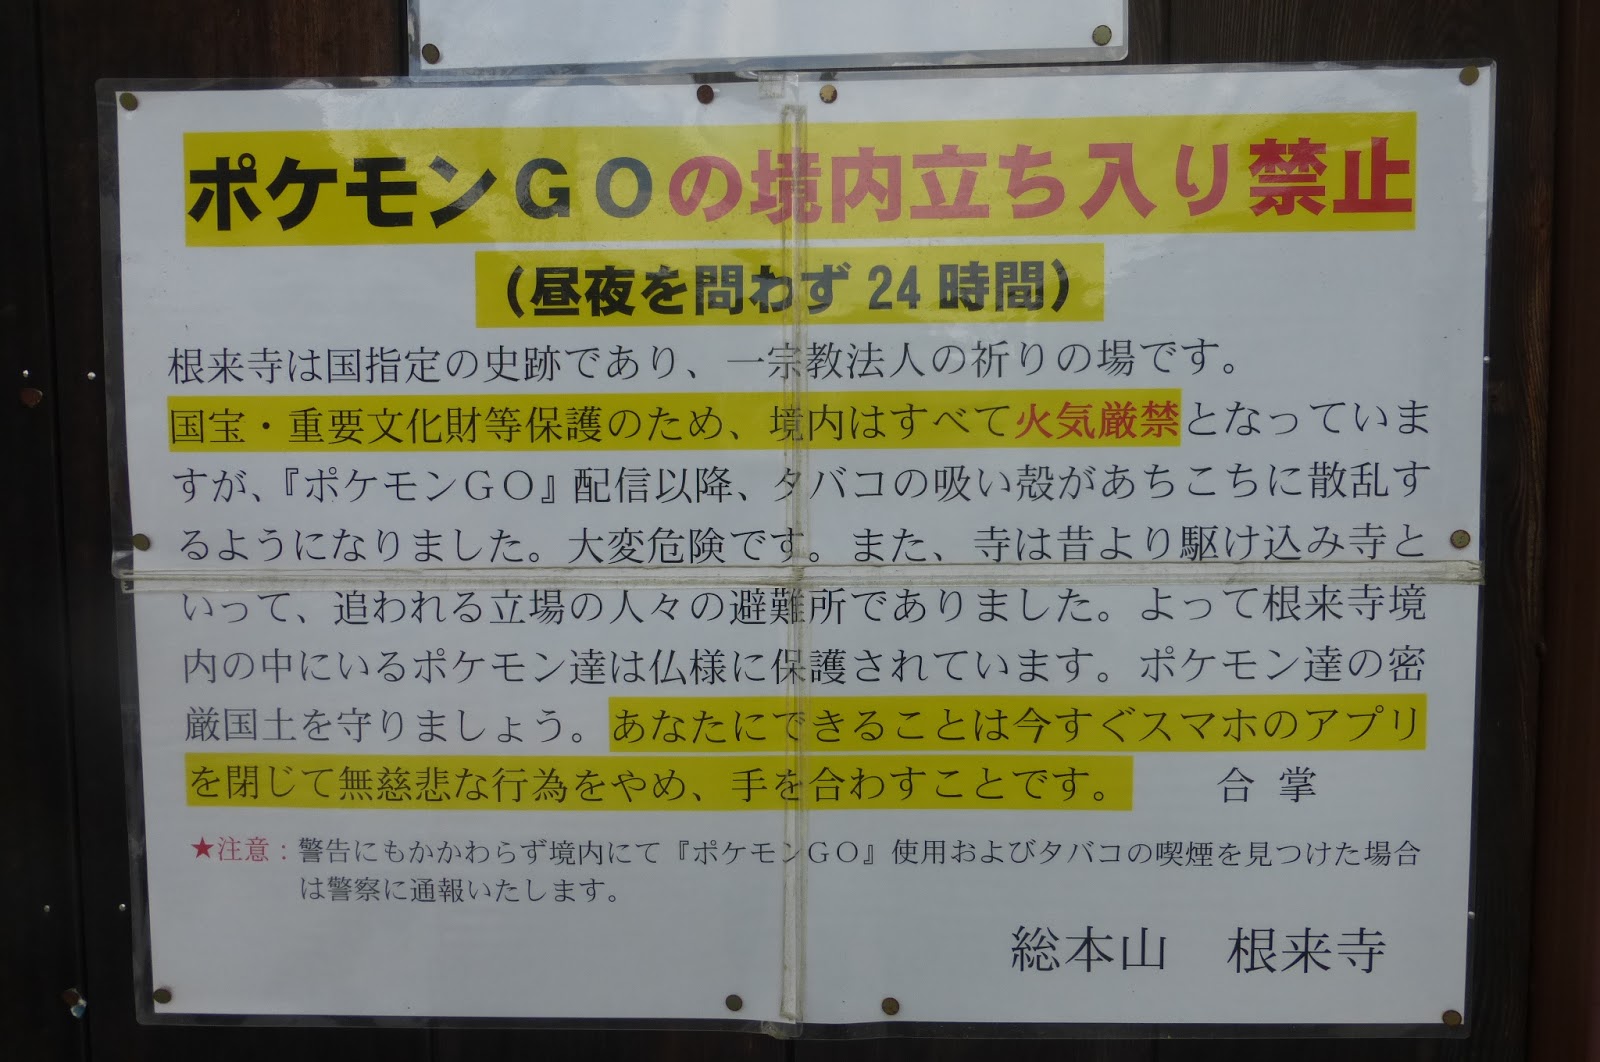 根来寺 和歌山県岩出市 の貼り紙 境内での ポケモンgo は無慈悲な行為らしい 珍妙雑記帖